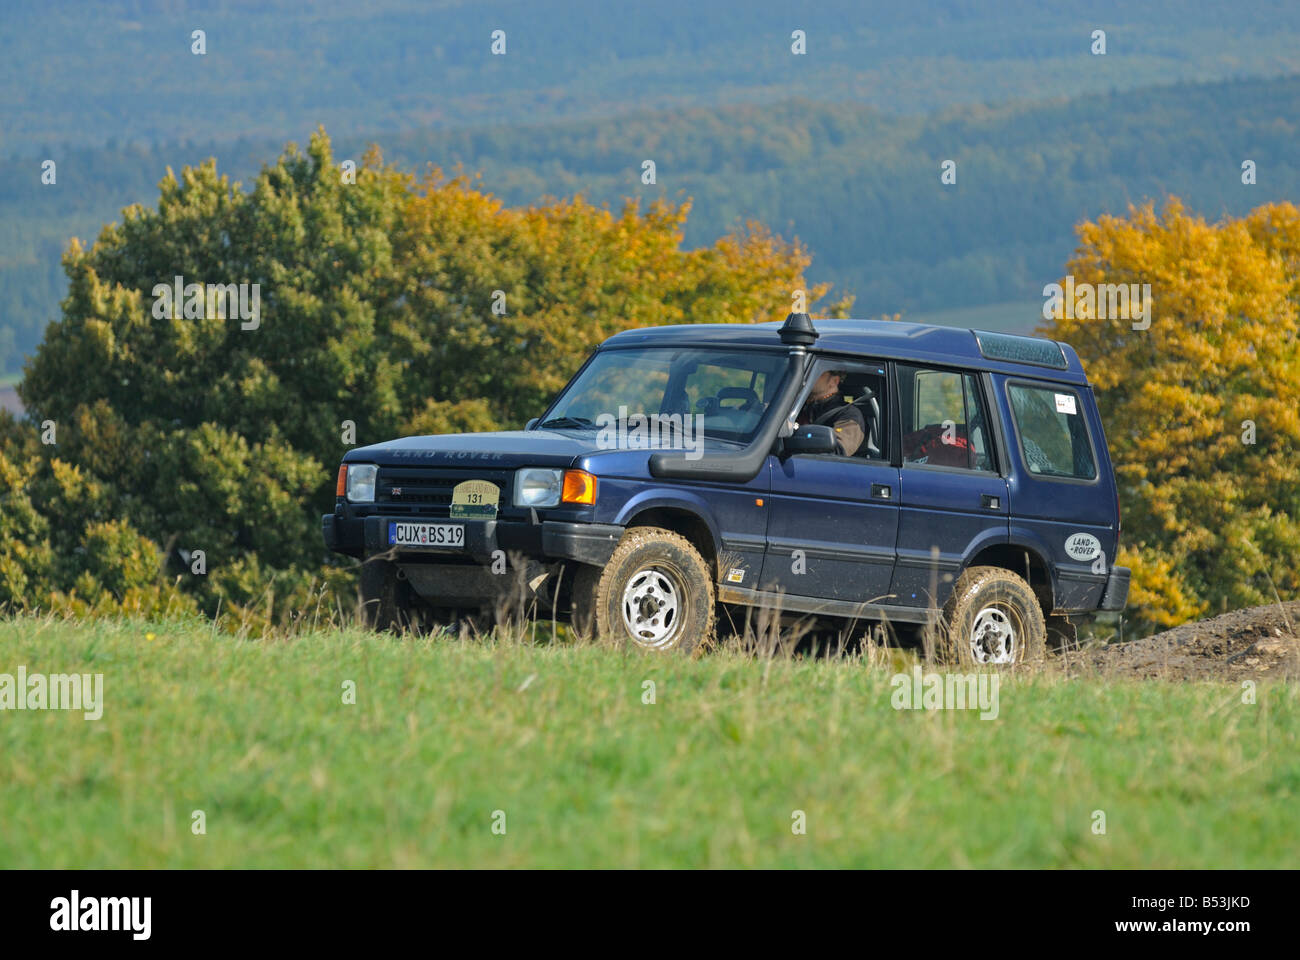 1990 Land Rover Discovery 1, équipé d'une prise d'air, sur une piste forestière dans les collines de Weserbergland. Banque D'Images